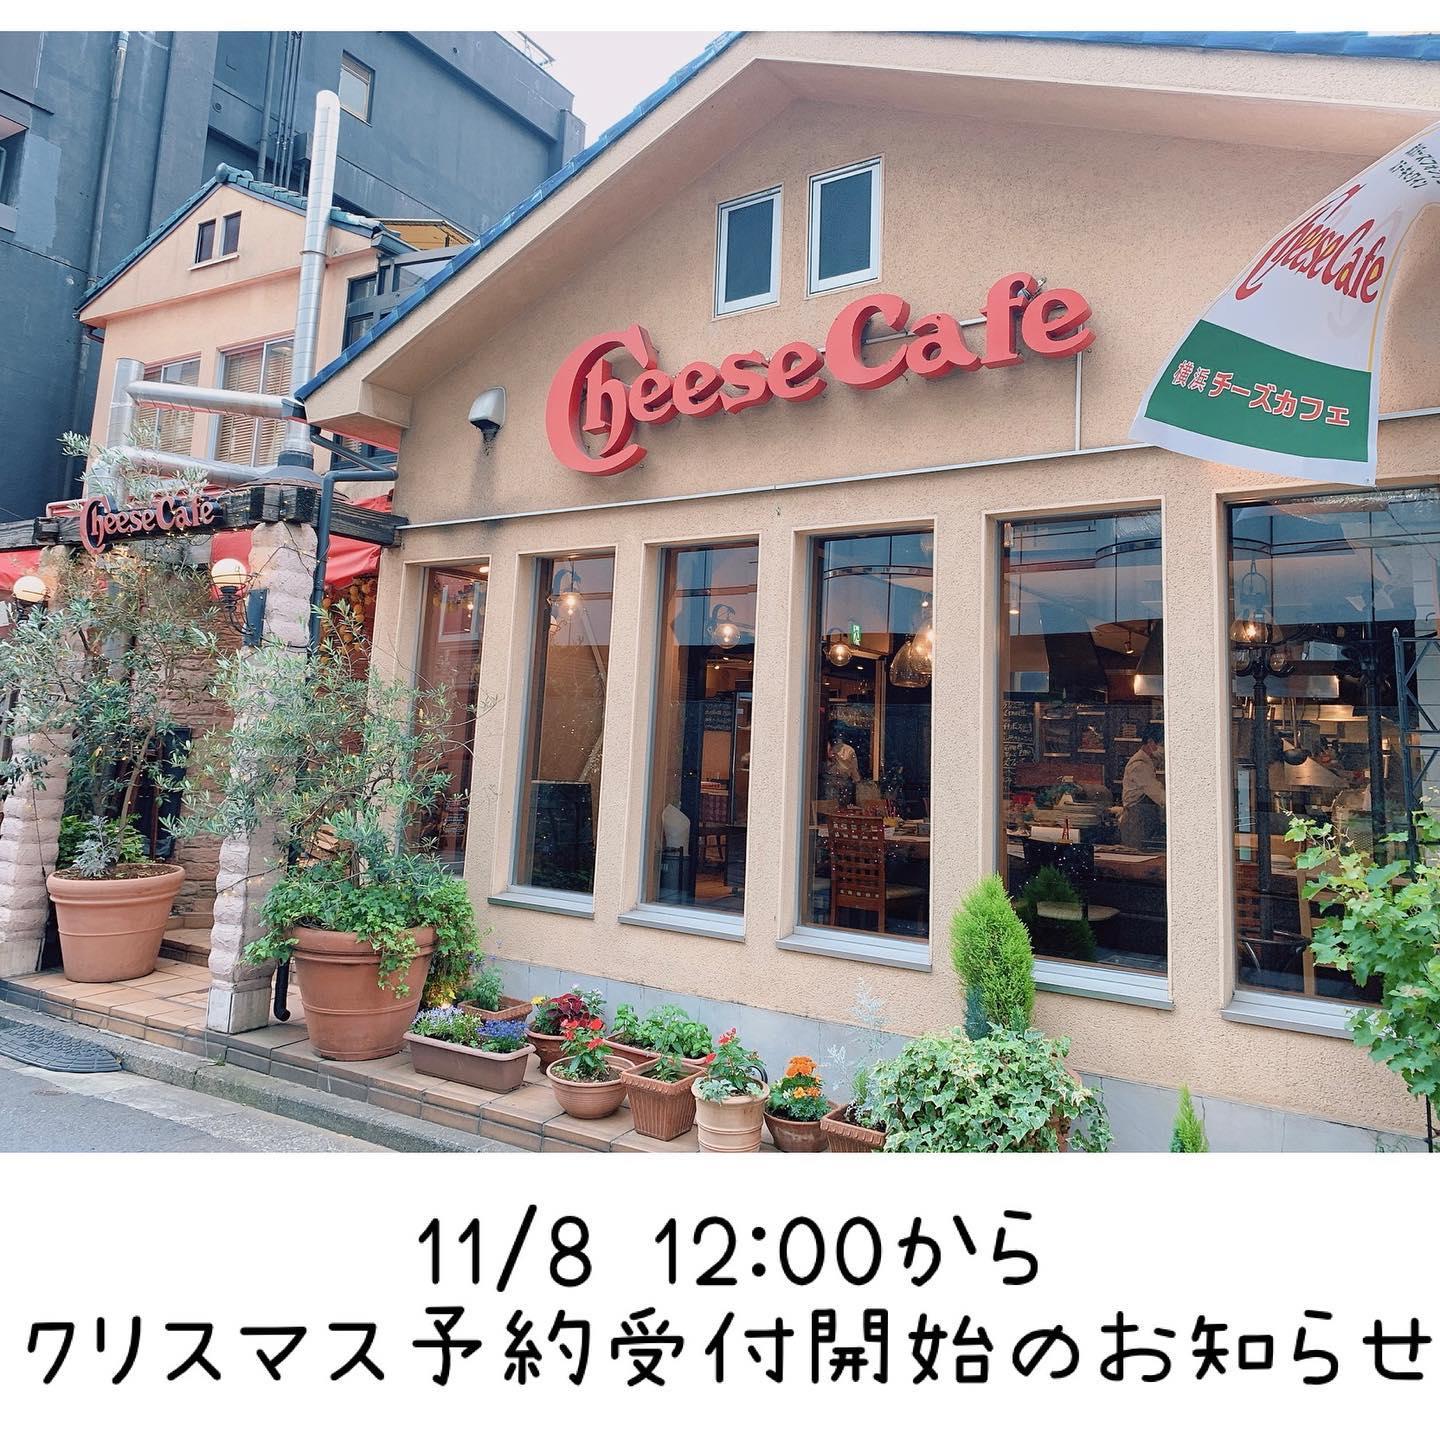 クリスマス予約について 横浜 チーズカフェ